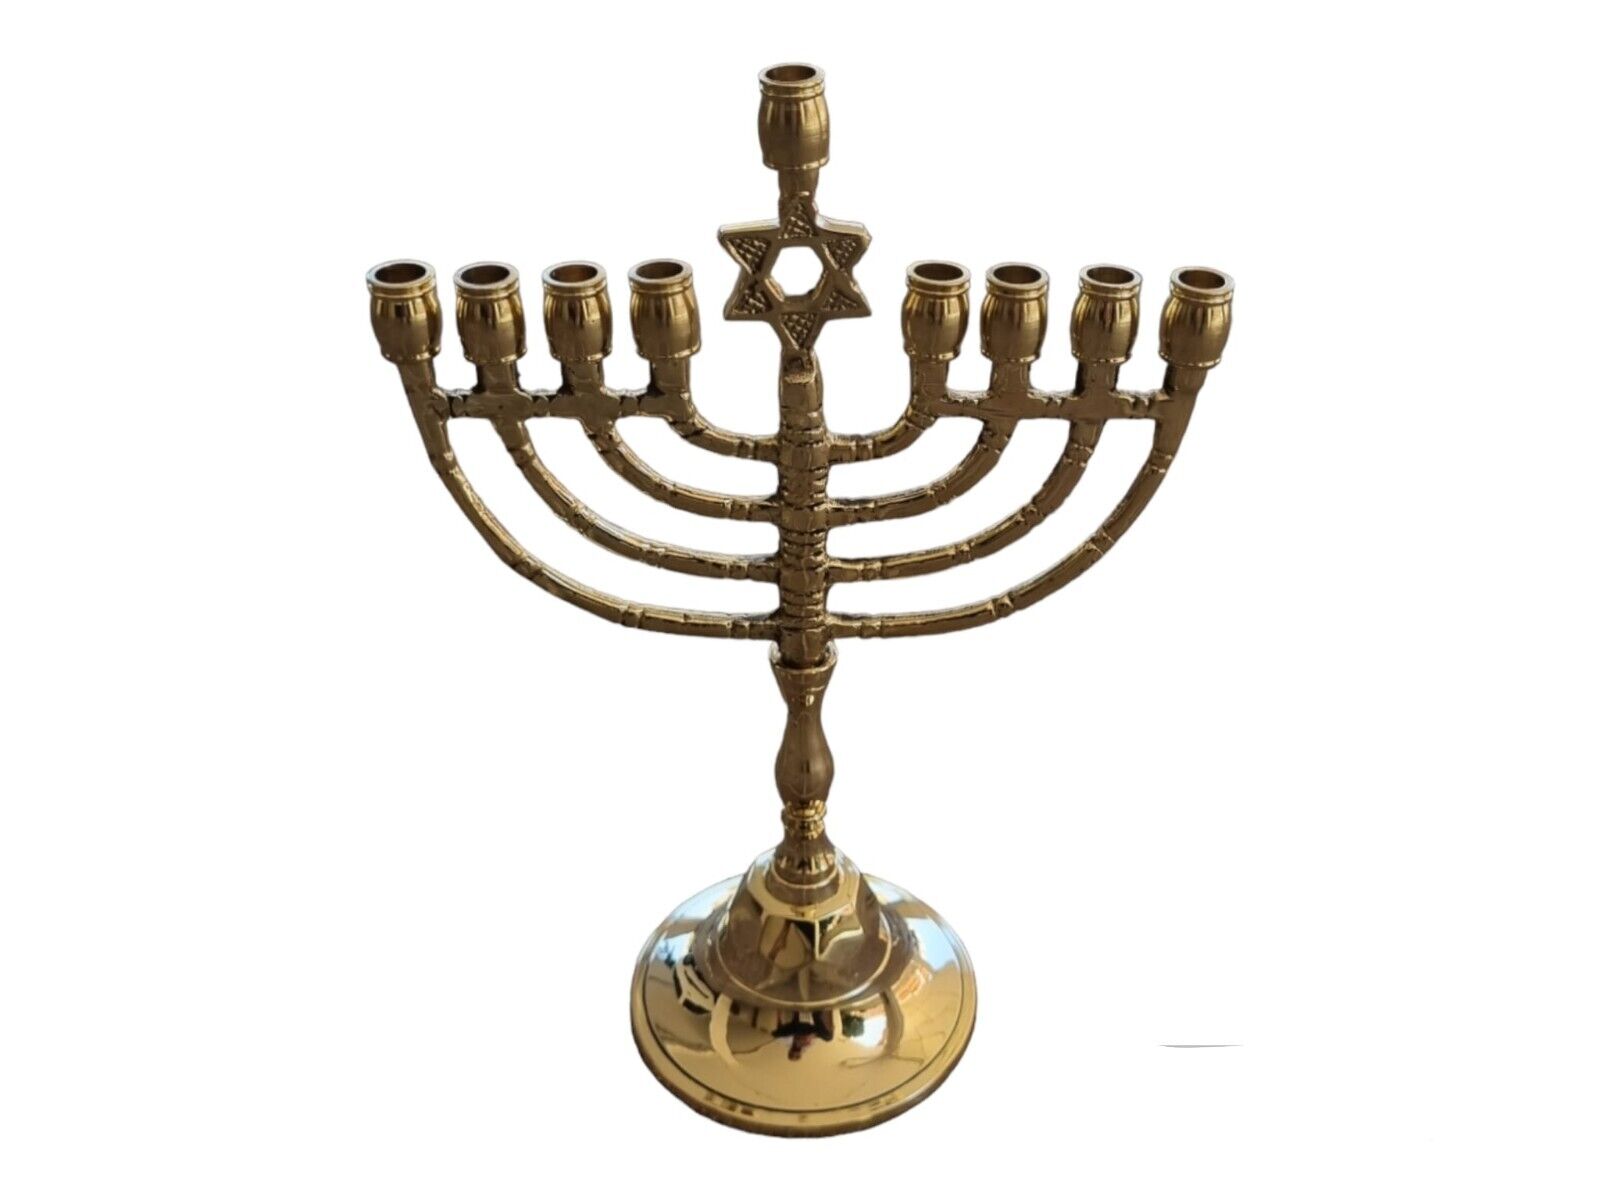 Hanukkah Menorah Star Of David Hanukia 9 Branches Vintage Brass Chanukah Candle